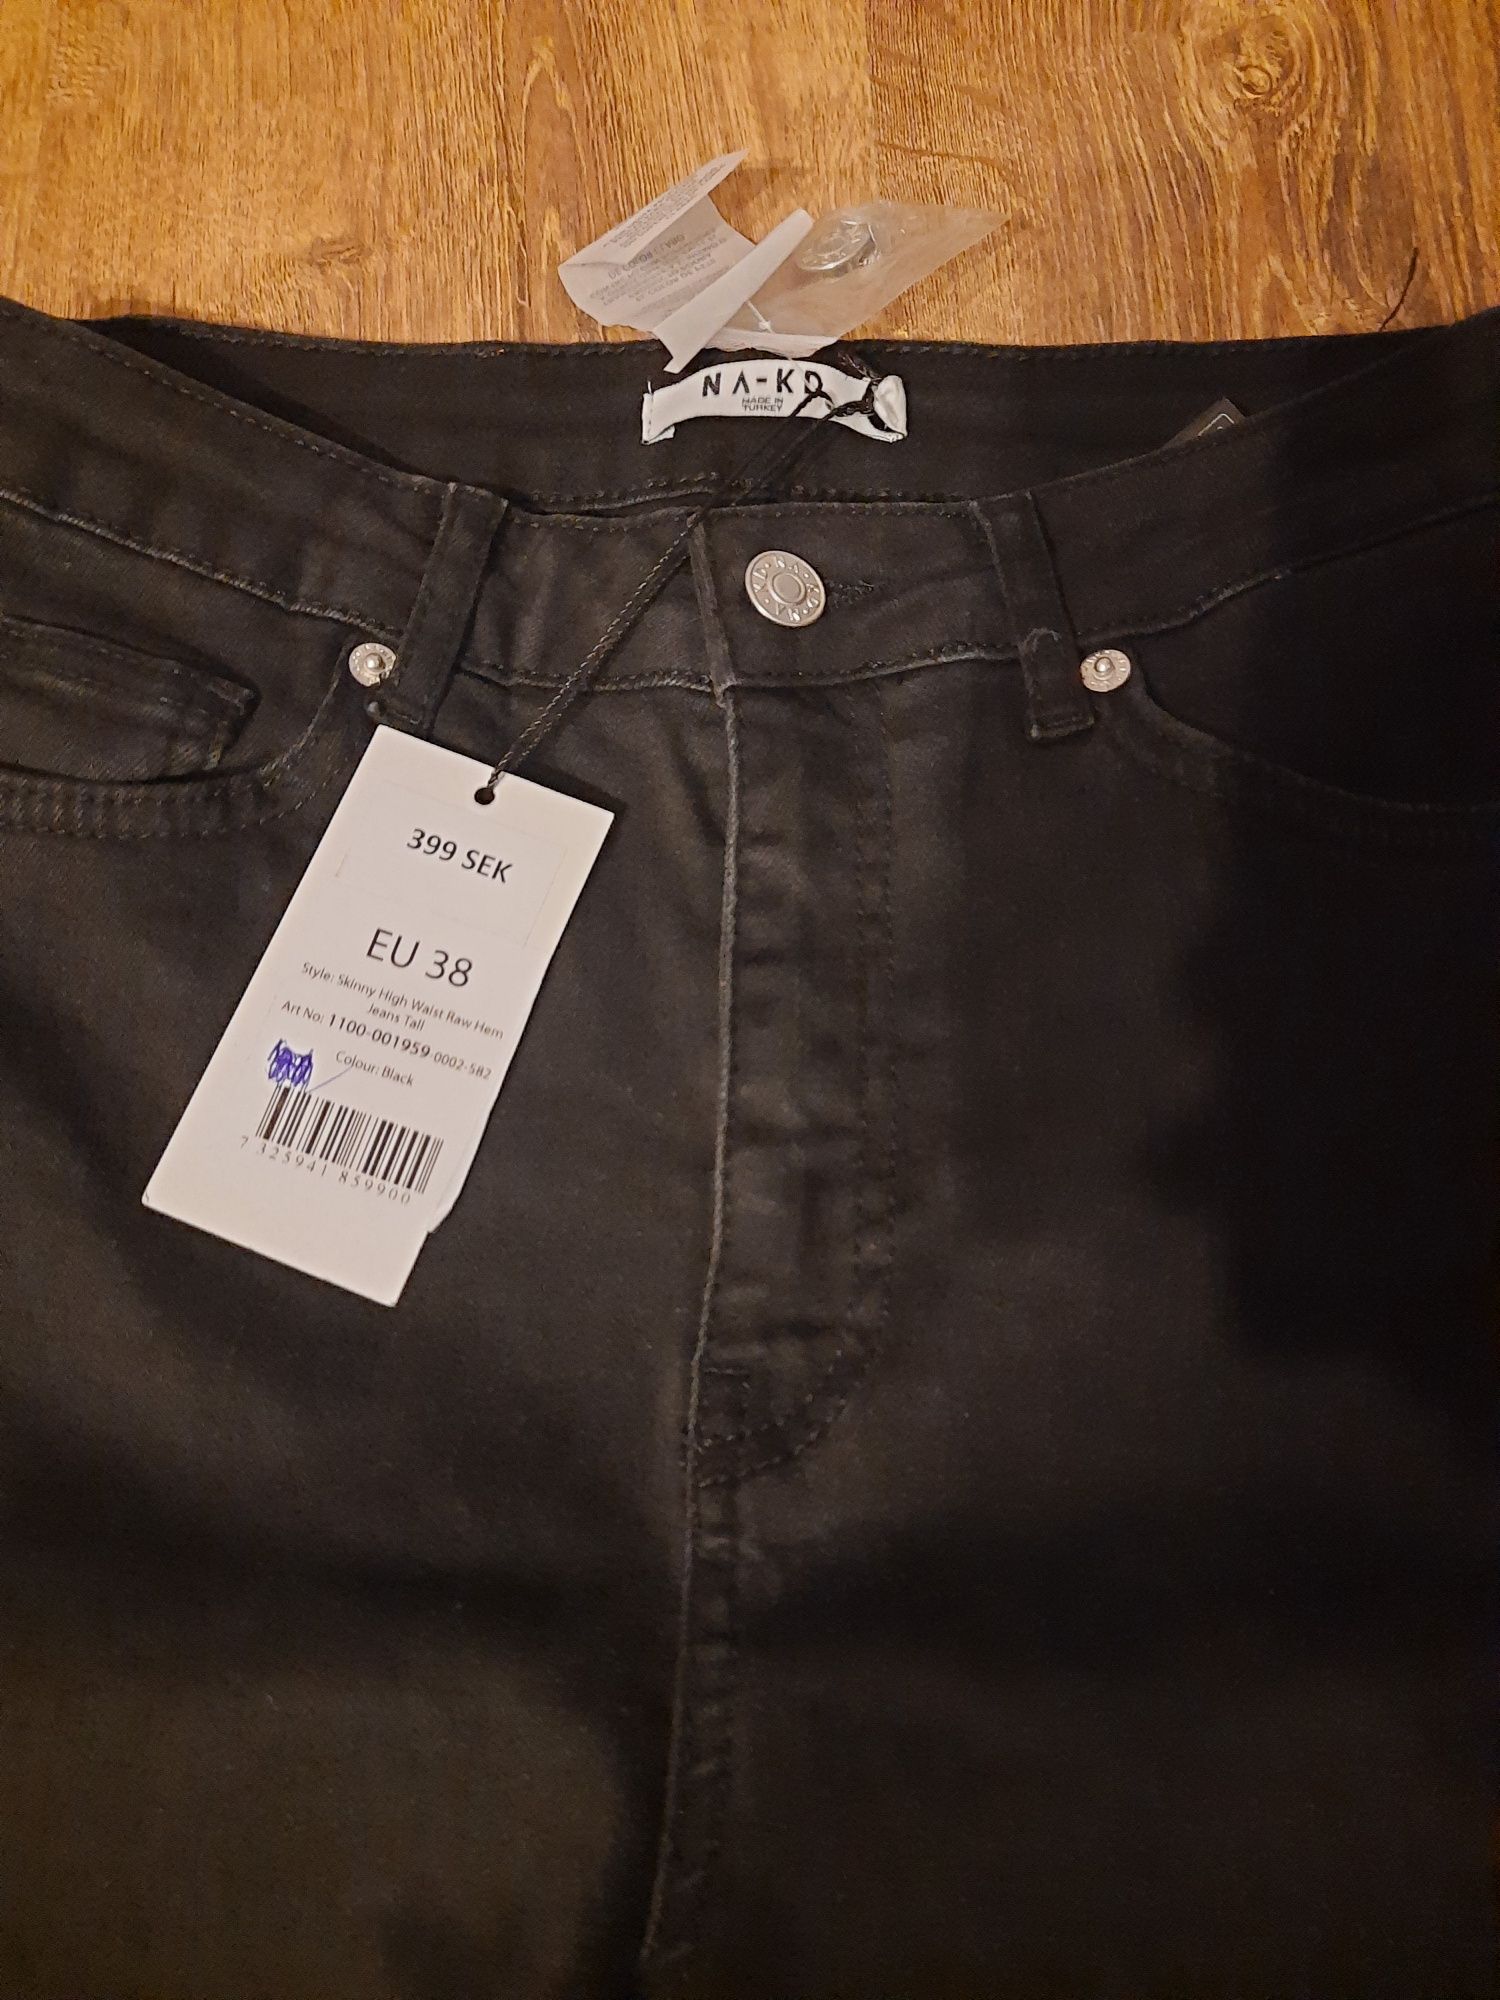 Spodnie czarne jeans NA-KD rozm. 38 nowe